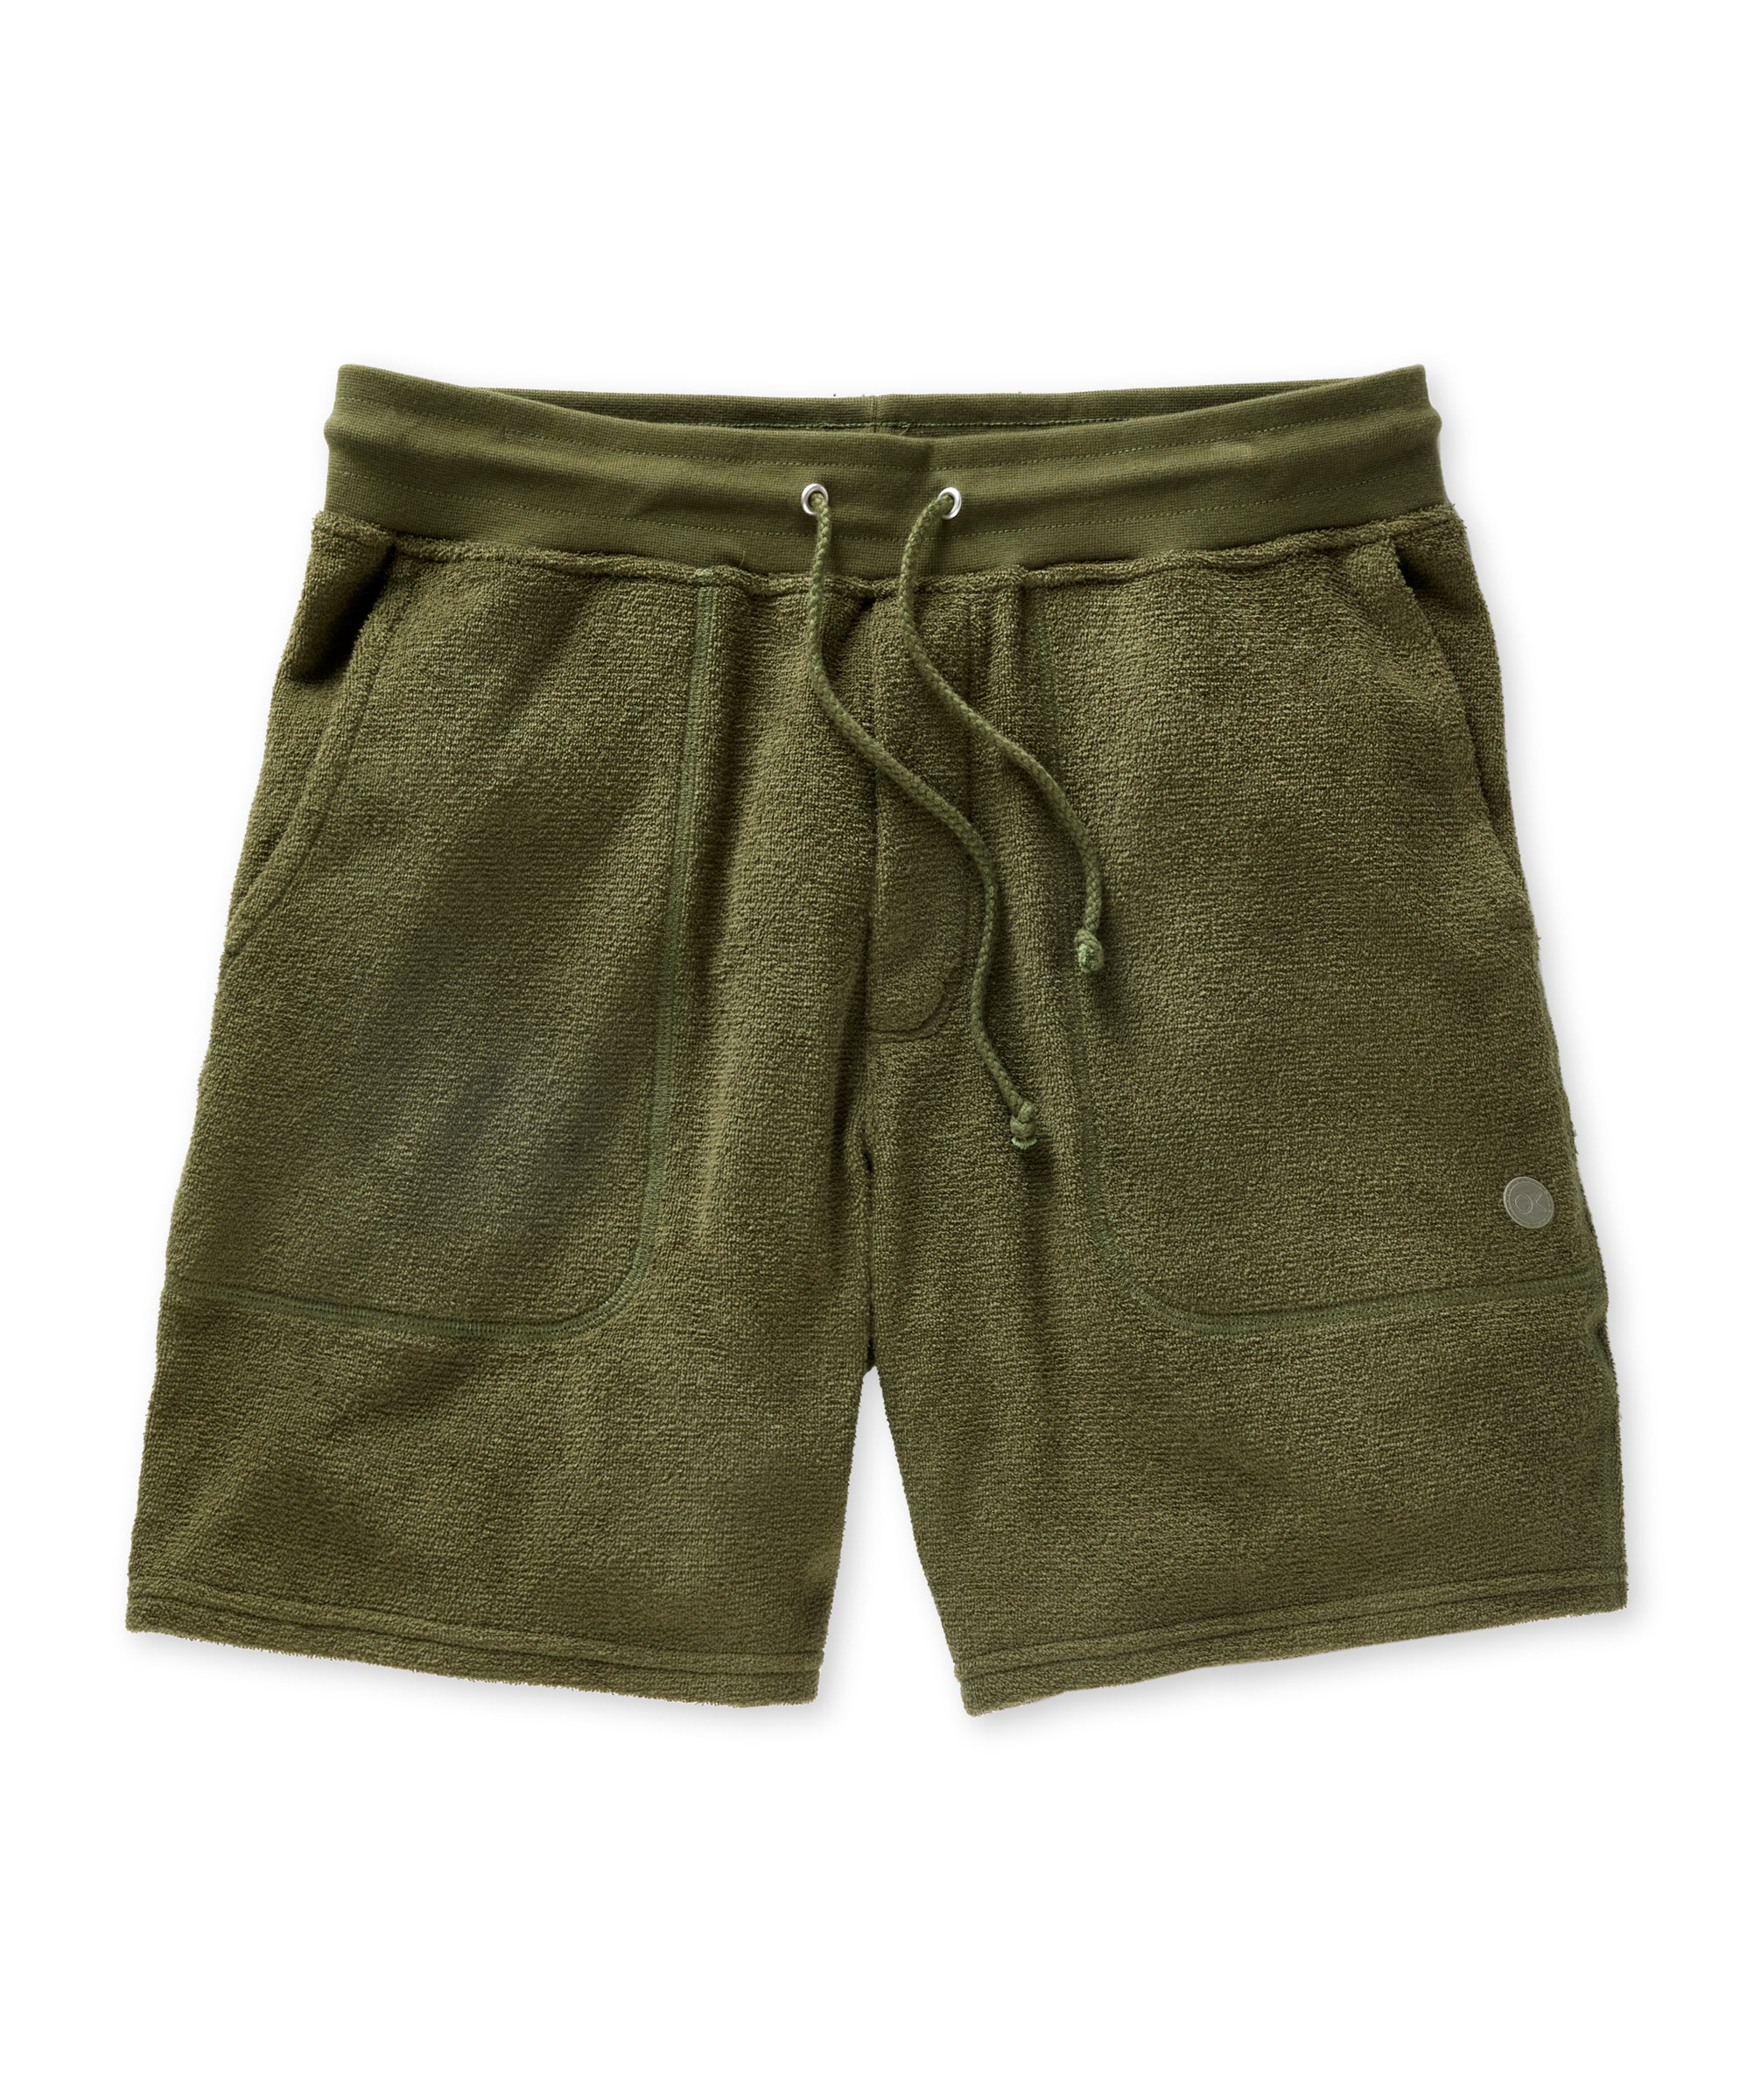 Hightide Sweatshorts | Men's Shorts | Outerknown